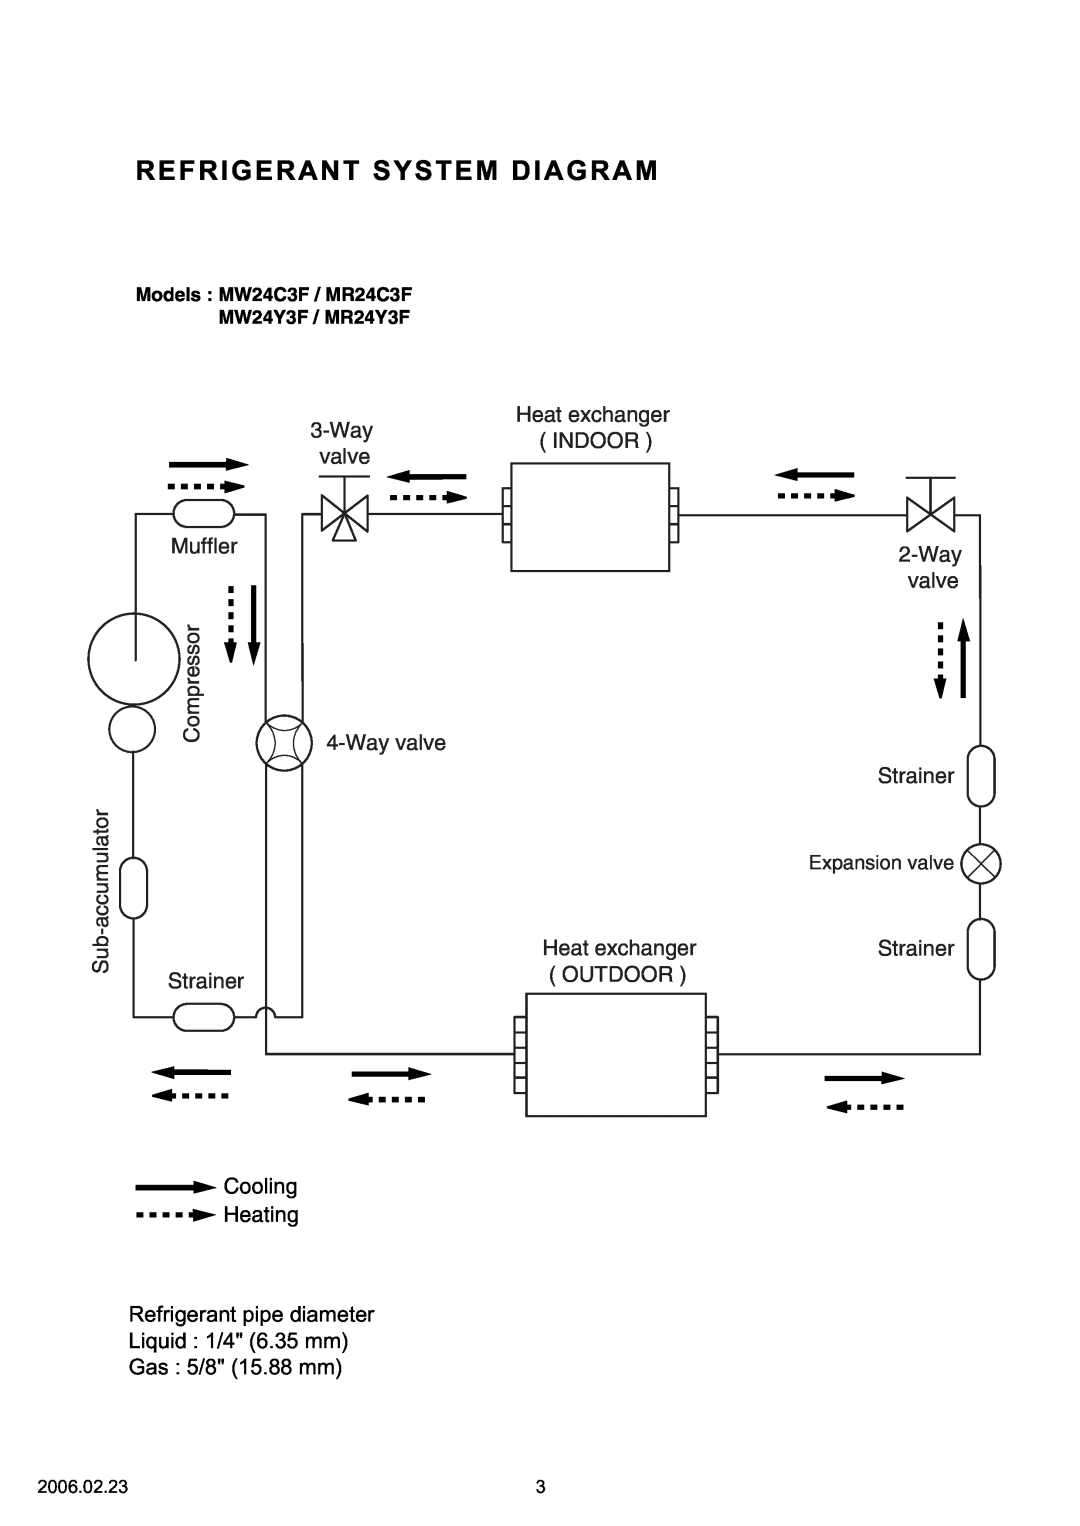 Friedrich MR24C3F Refrigerant System Diagram, Heat exchanger 3-Way INDOOR valve, Strainer, Wayvalve 4-Wayvalve, Outdoor 